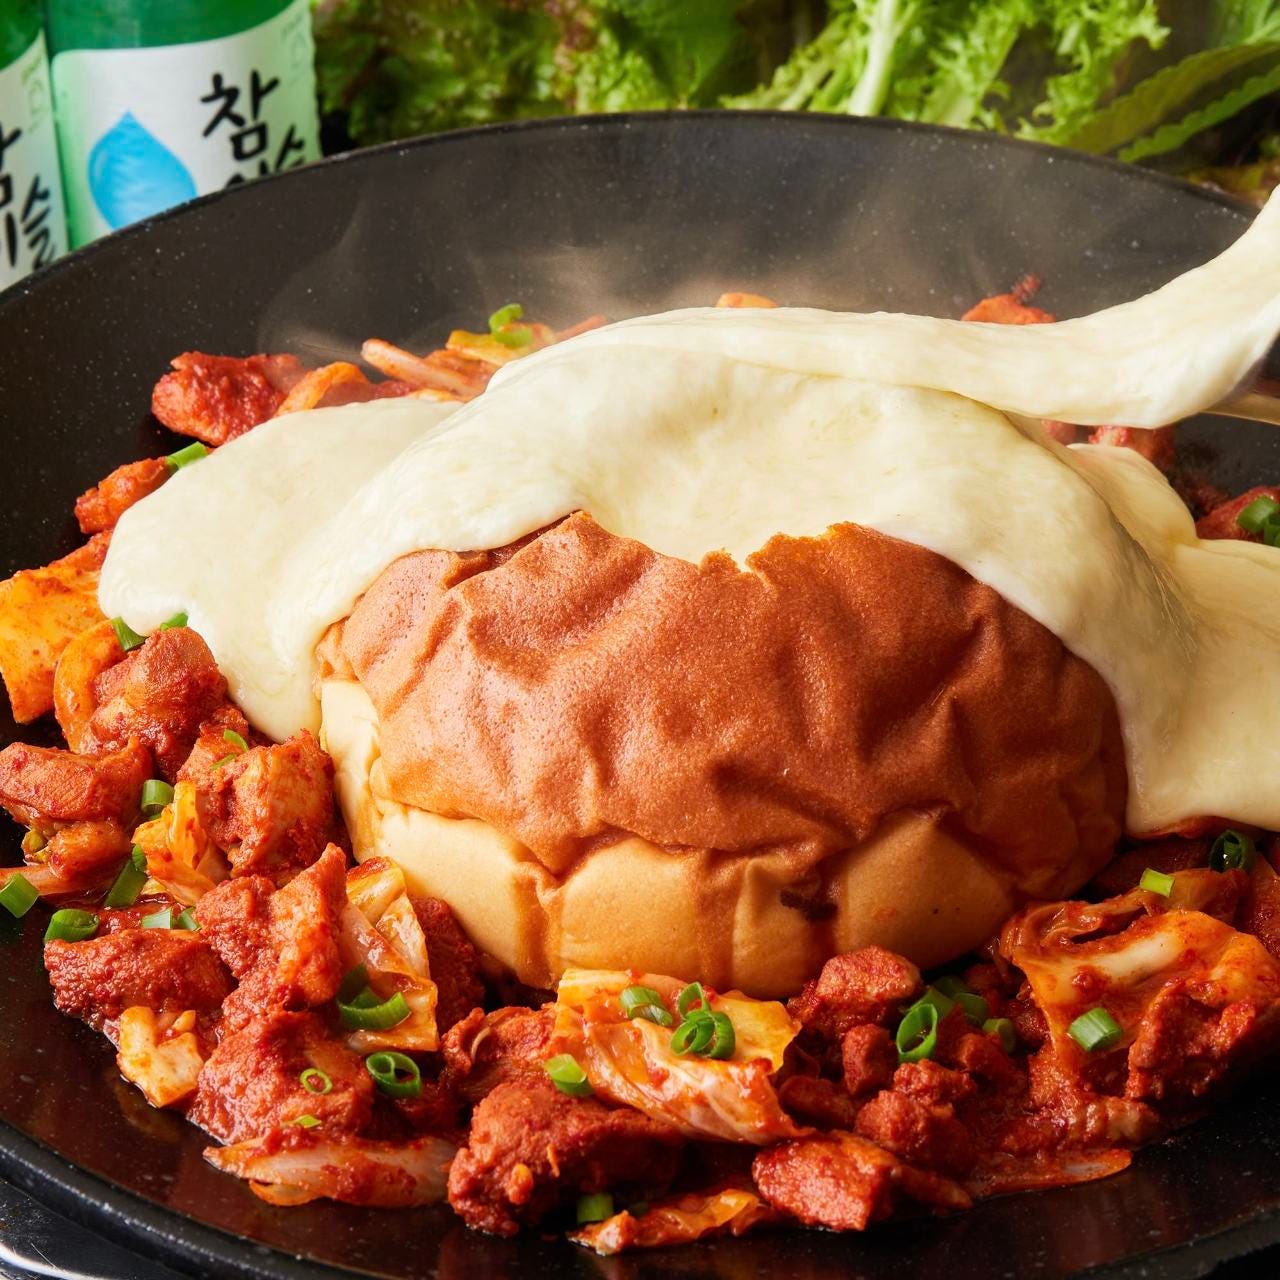 本格韓国料理と生サムギョプサル 金達莱 新大久保の「溶岩パンチーズダッカルビ」